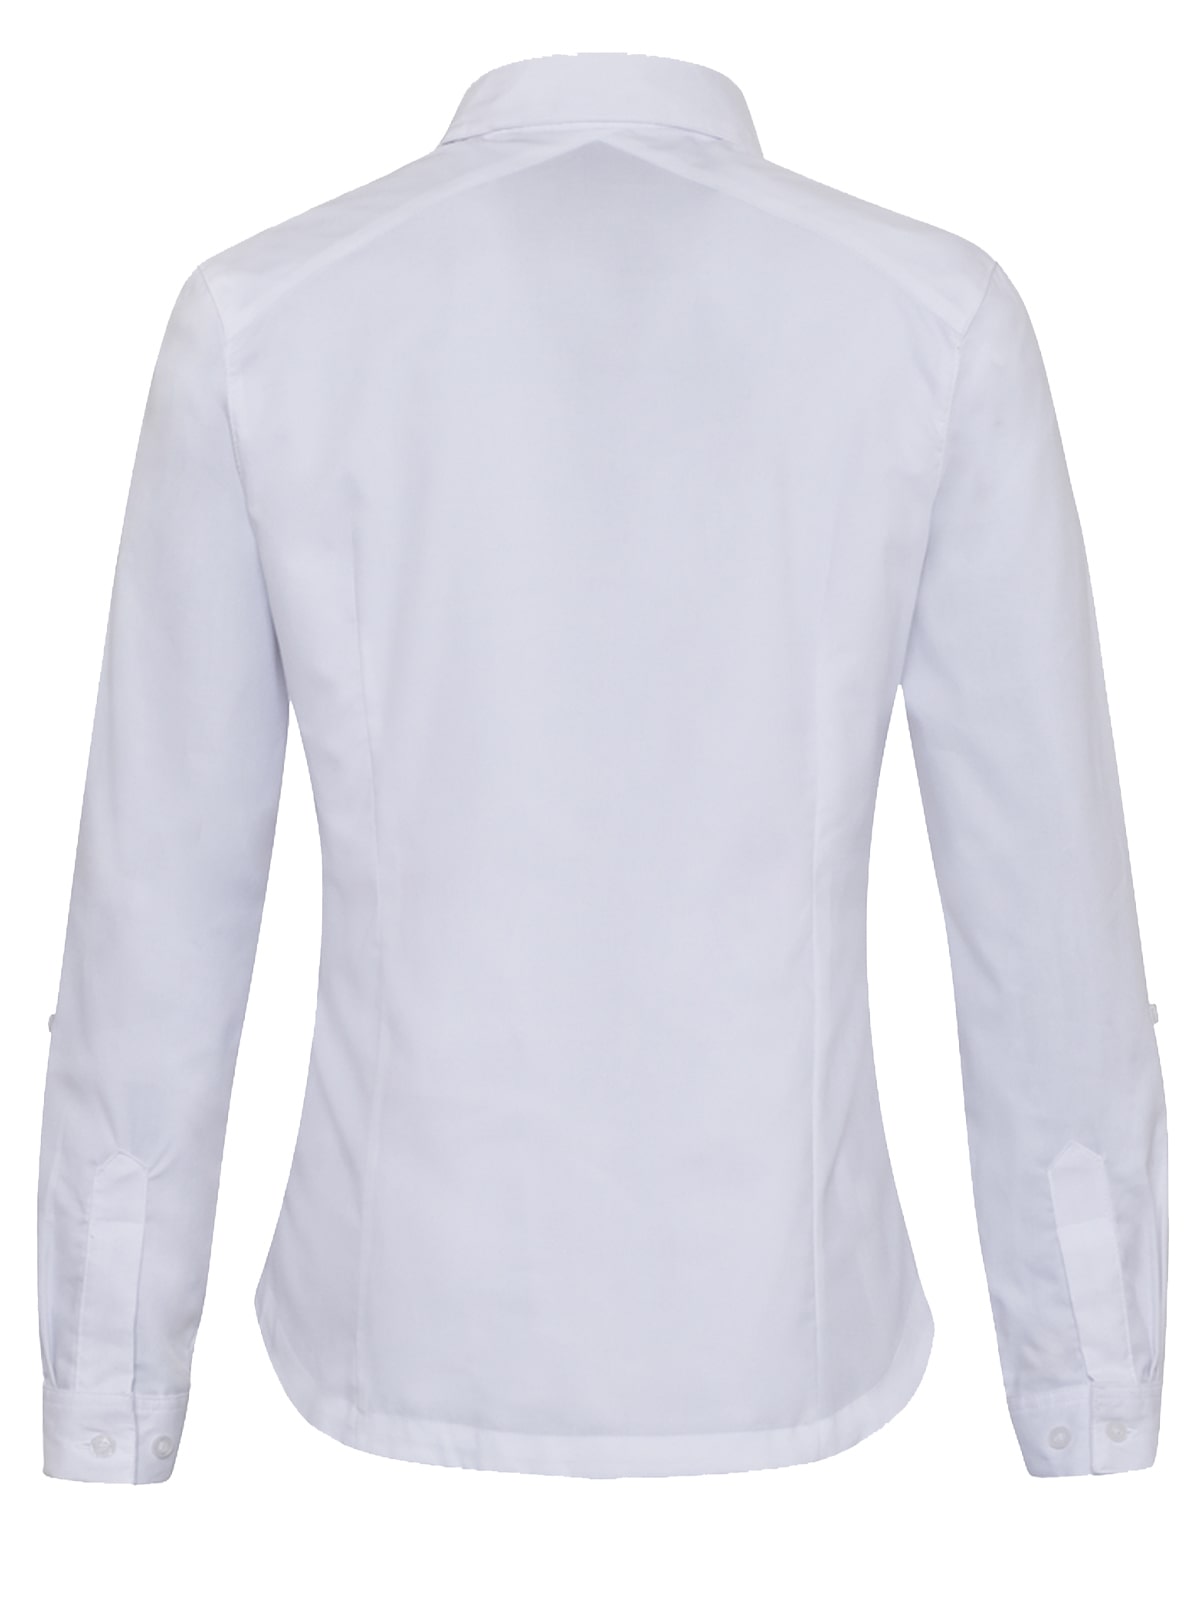 White oxford blouse rear view